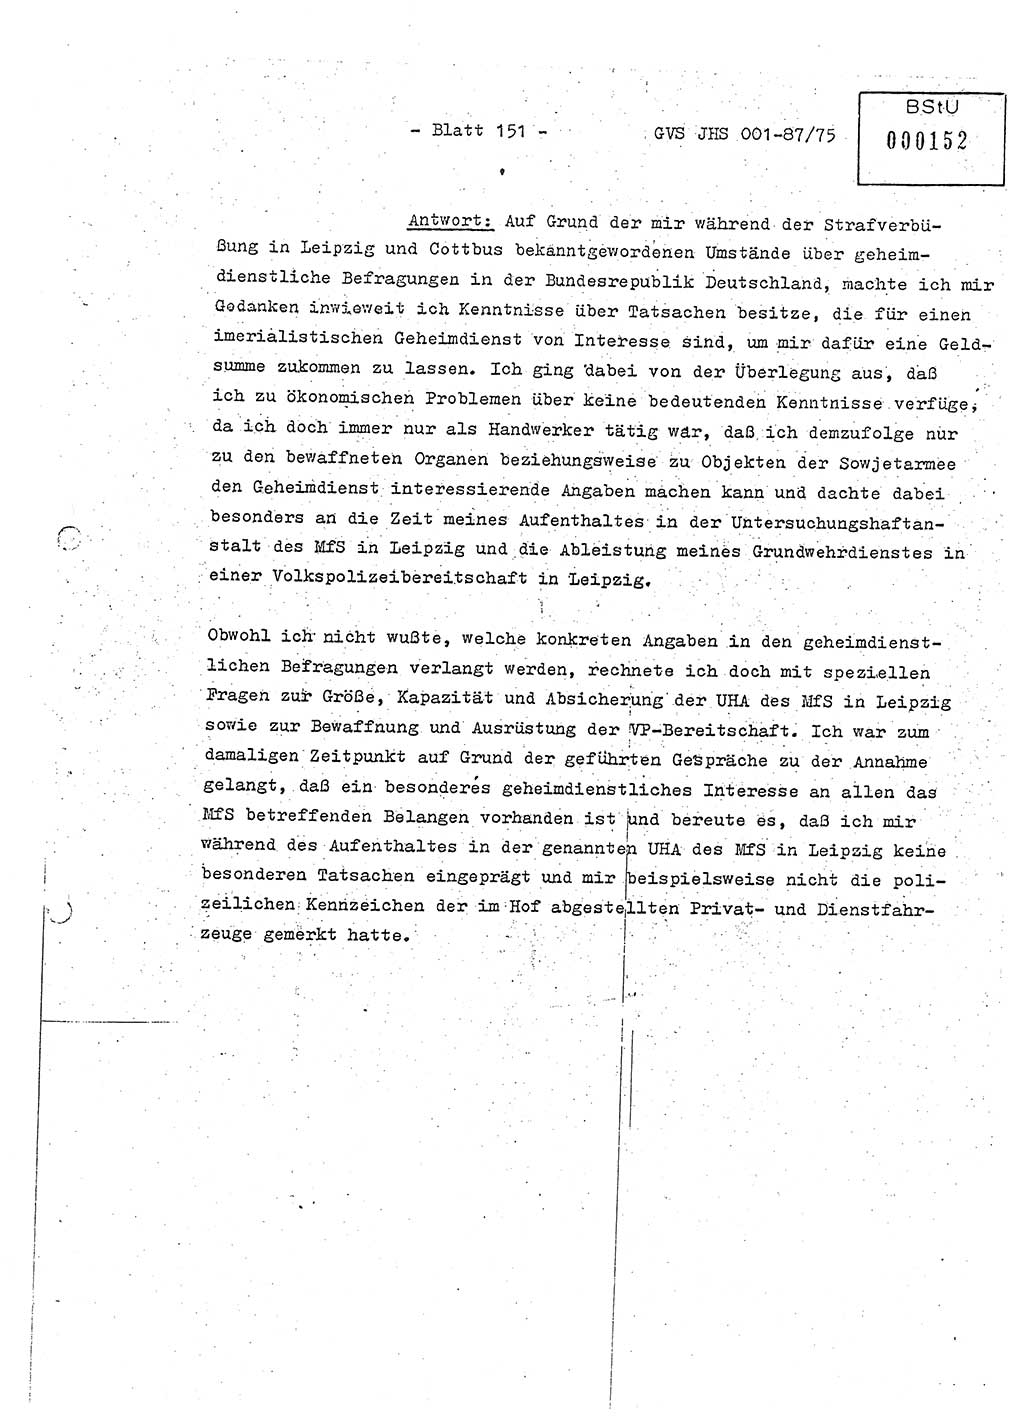 Diplomarbeit Hauptmann Volkmar Heinz (Abt. ⅩⅣ), Oberleutnant Lothar Rüdiger (BV Lpz. Abt. Ⅺ), Ministerium für Staatssicherheit (MfS) [Deutsche Demokratische Republik (DDR)], Juristische Hochschule (JHS), Geheime Verschlußsache (GVS) o001-87/75, Potsdam 1975, Seite 151 (Dipl.-Arb. MfS DDR JHS GVS o001-87/75 1975, S. 151)